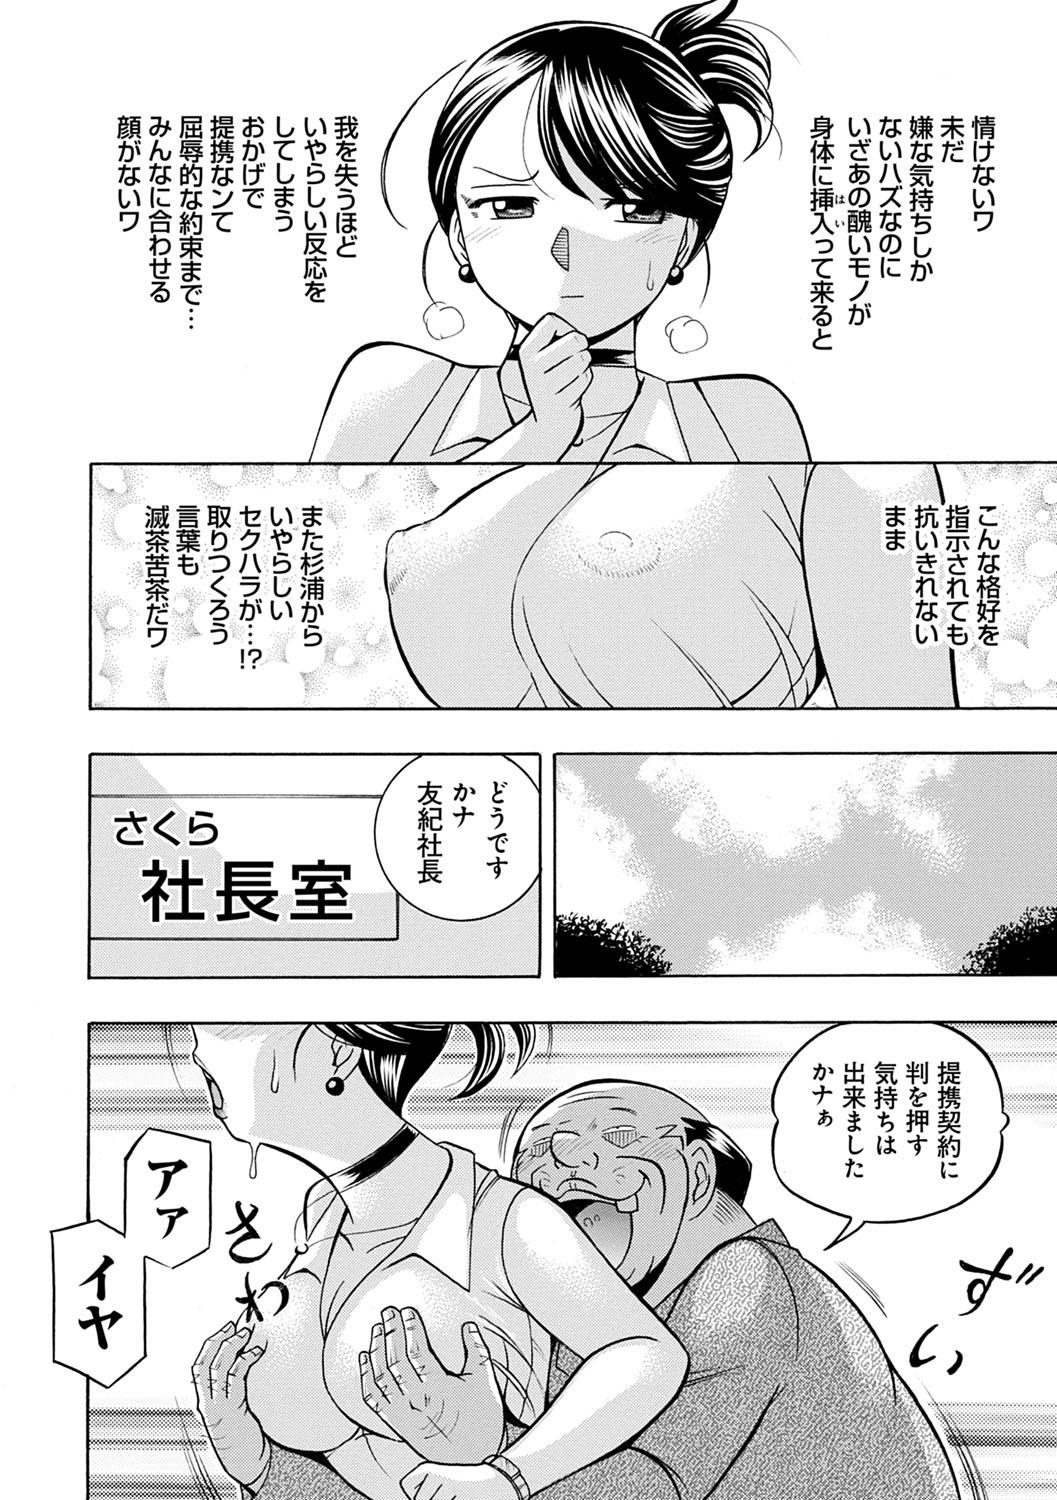 [Chuuka Naruto] Bijin Shachou Yuki ~Mitsuyaku no Nikusettai~ - YUKI of The Beautiful Chief Executive Officer ~The secret sweet treaty by sexual reception~ [Digital] 88